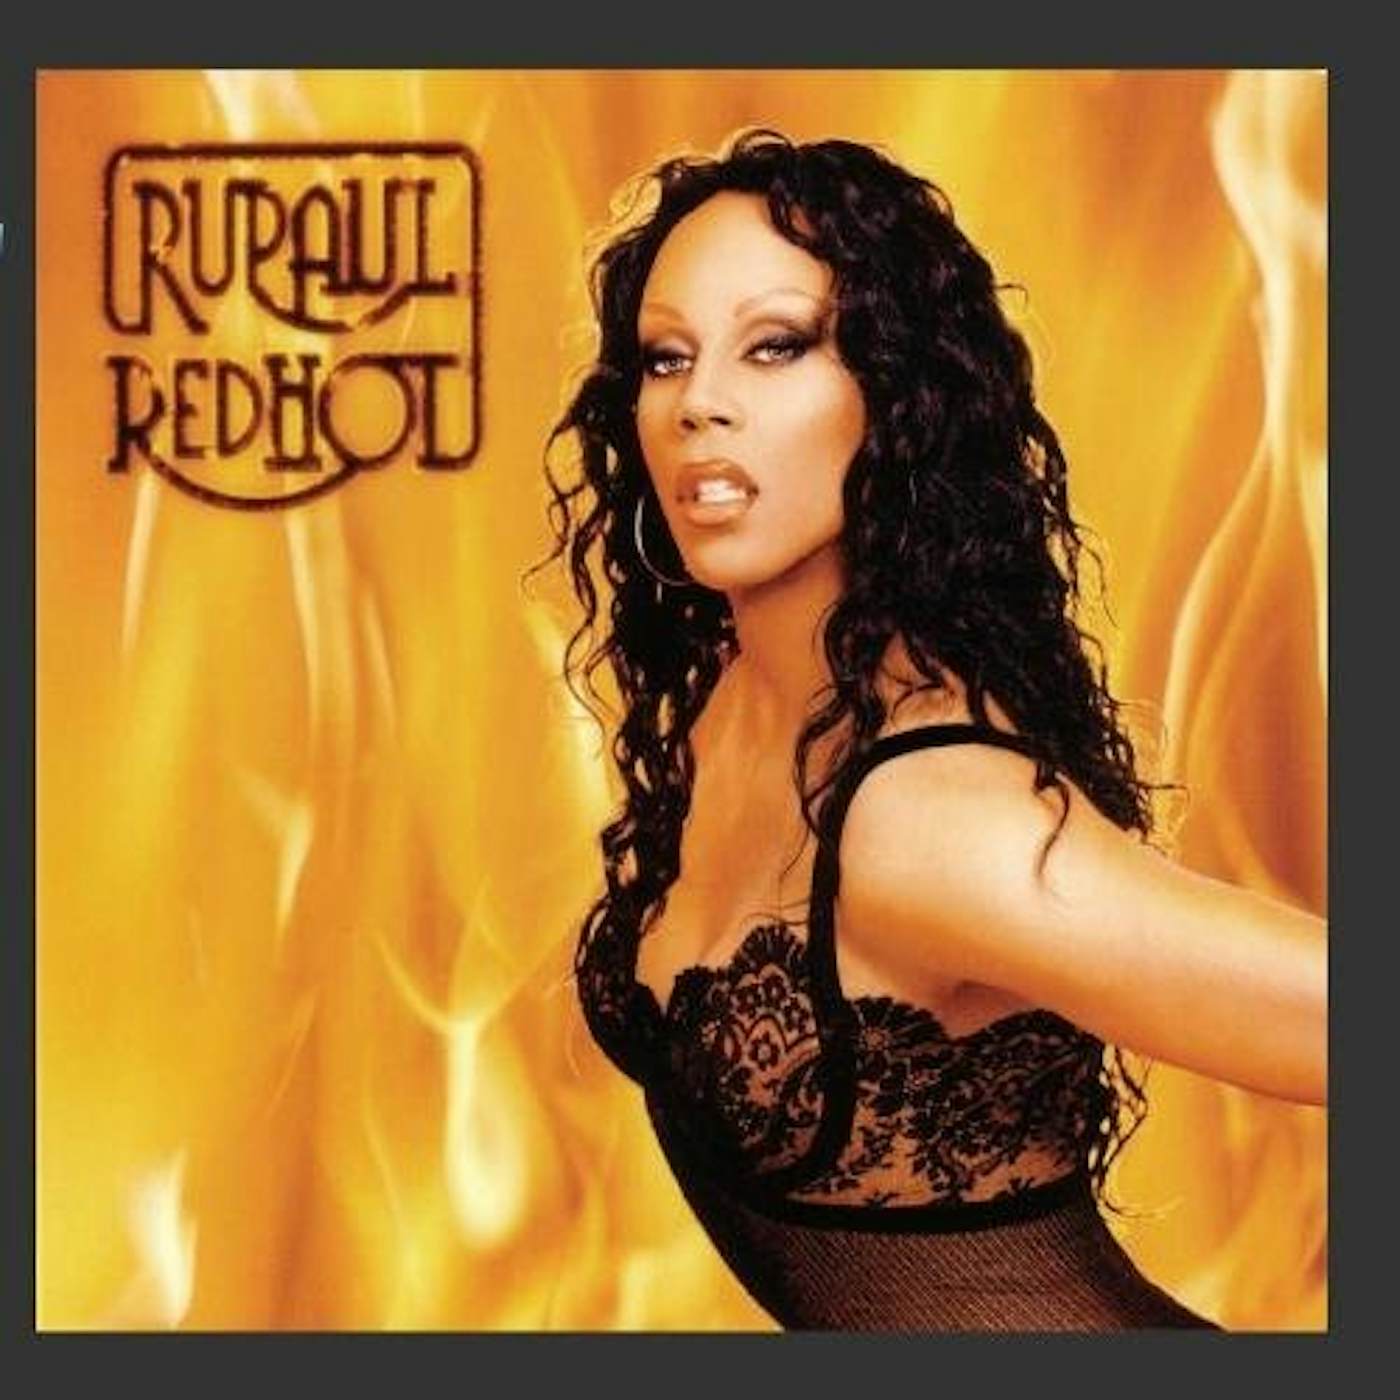 Rupaul Red Hot CD